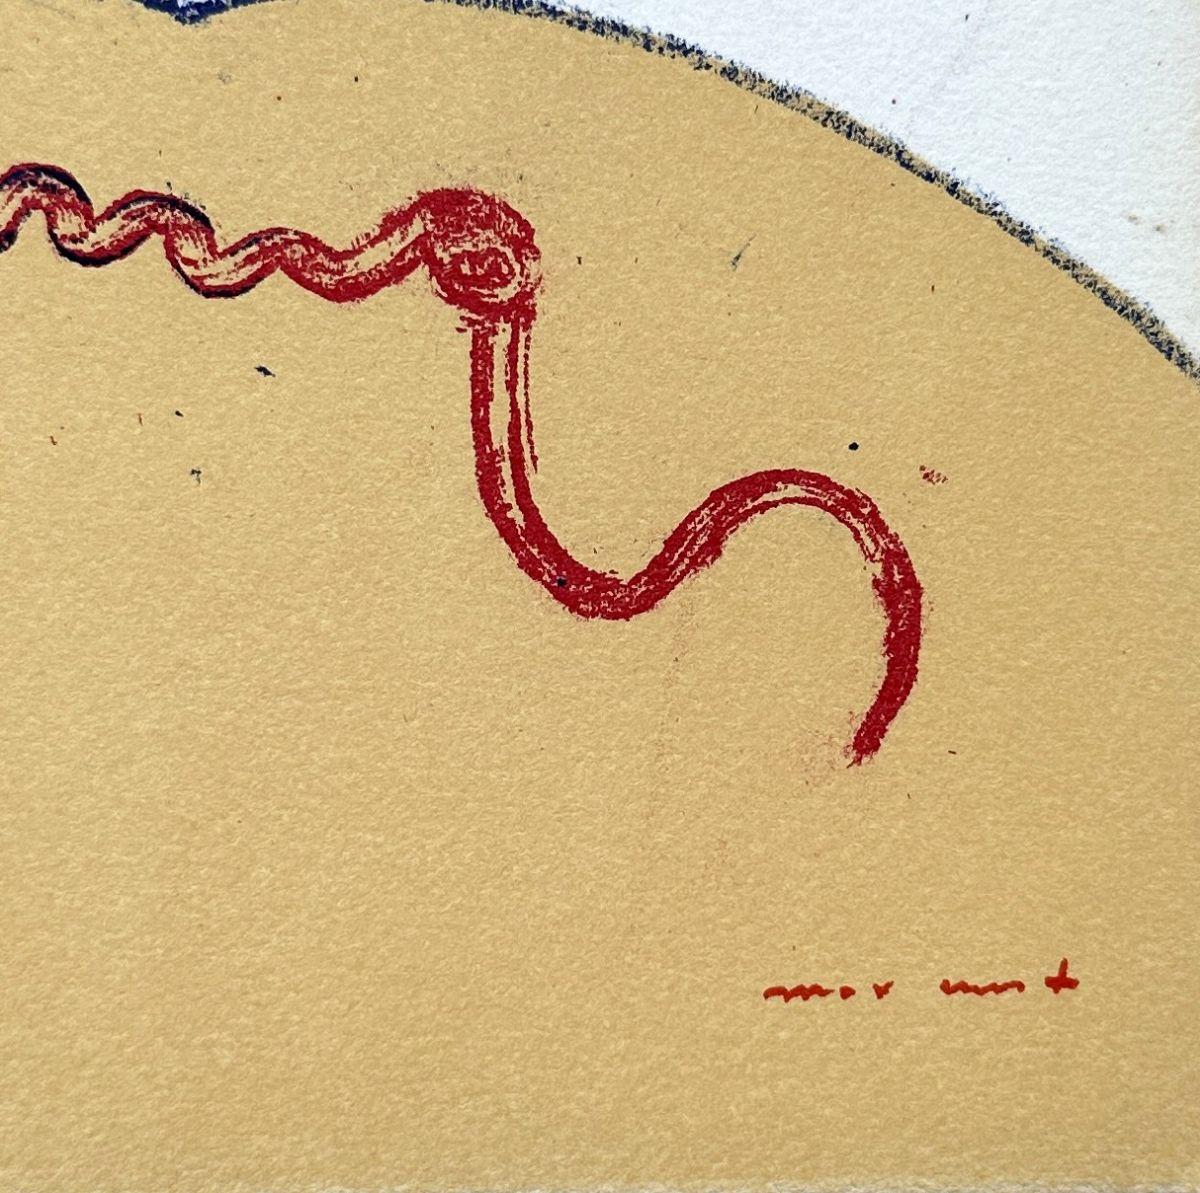 Max Ernst (1891-1976)
Paysage surréaliste, 1973

Lithographie originale en couleurs
Signé dans la plaque
Sur vellum format 27,5 x 35,5 cm
Imprimé dans l'atelier de Pierre Chave

Très bon état.